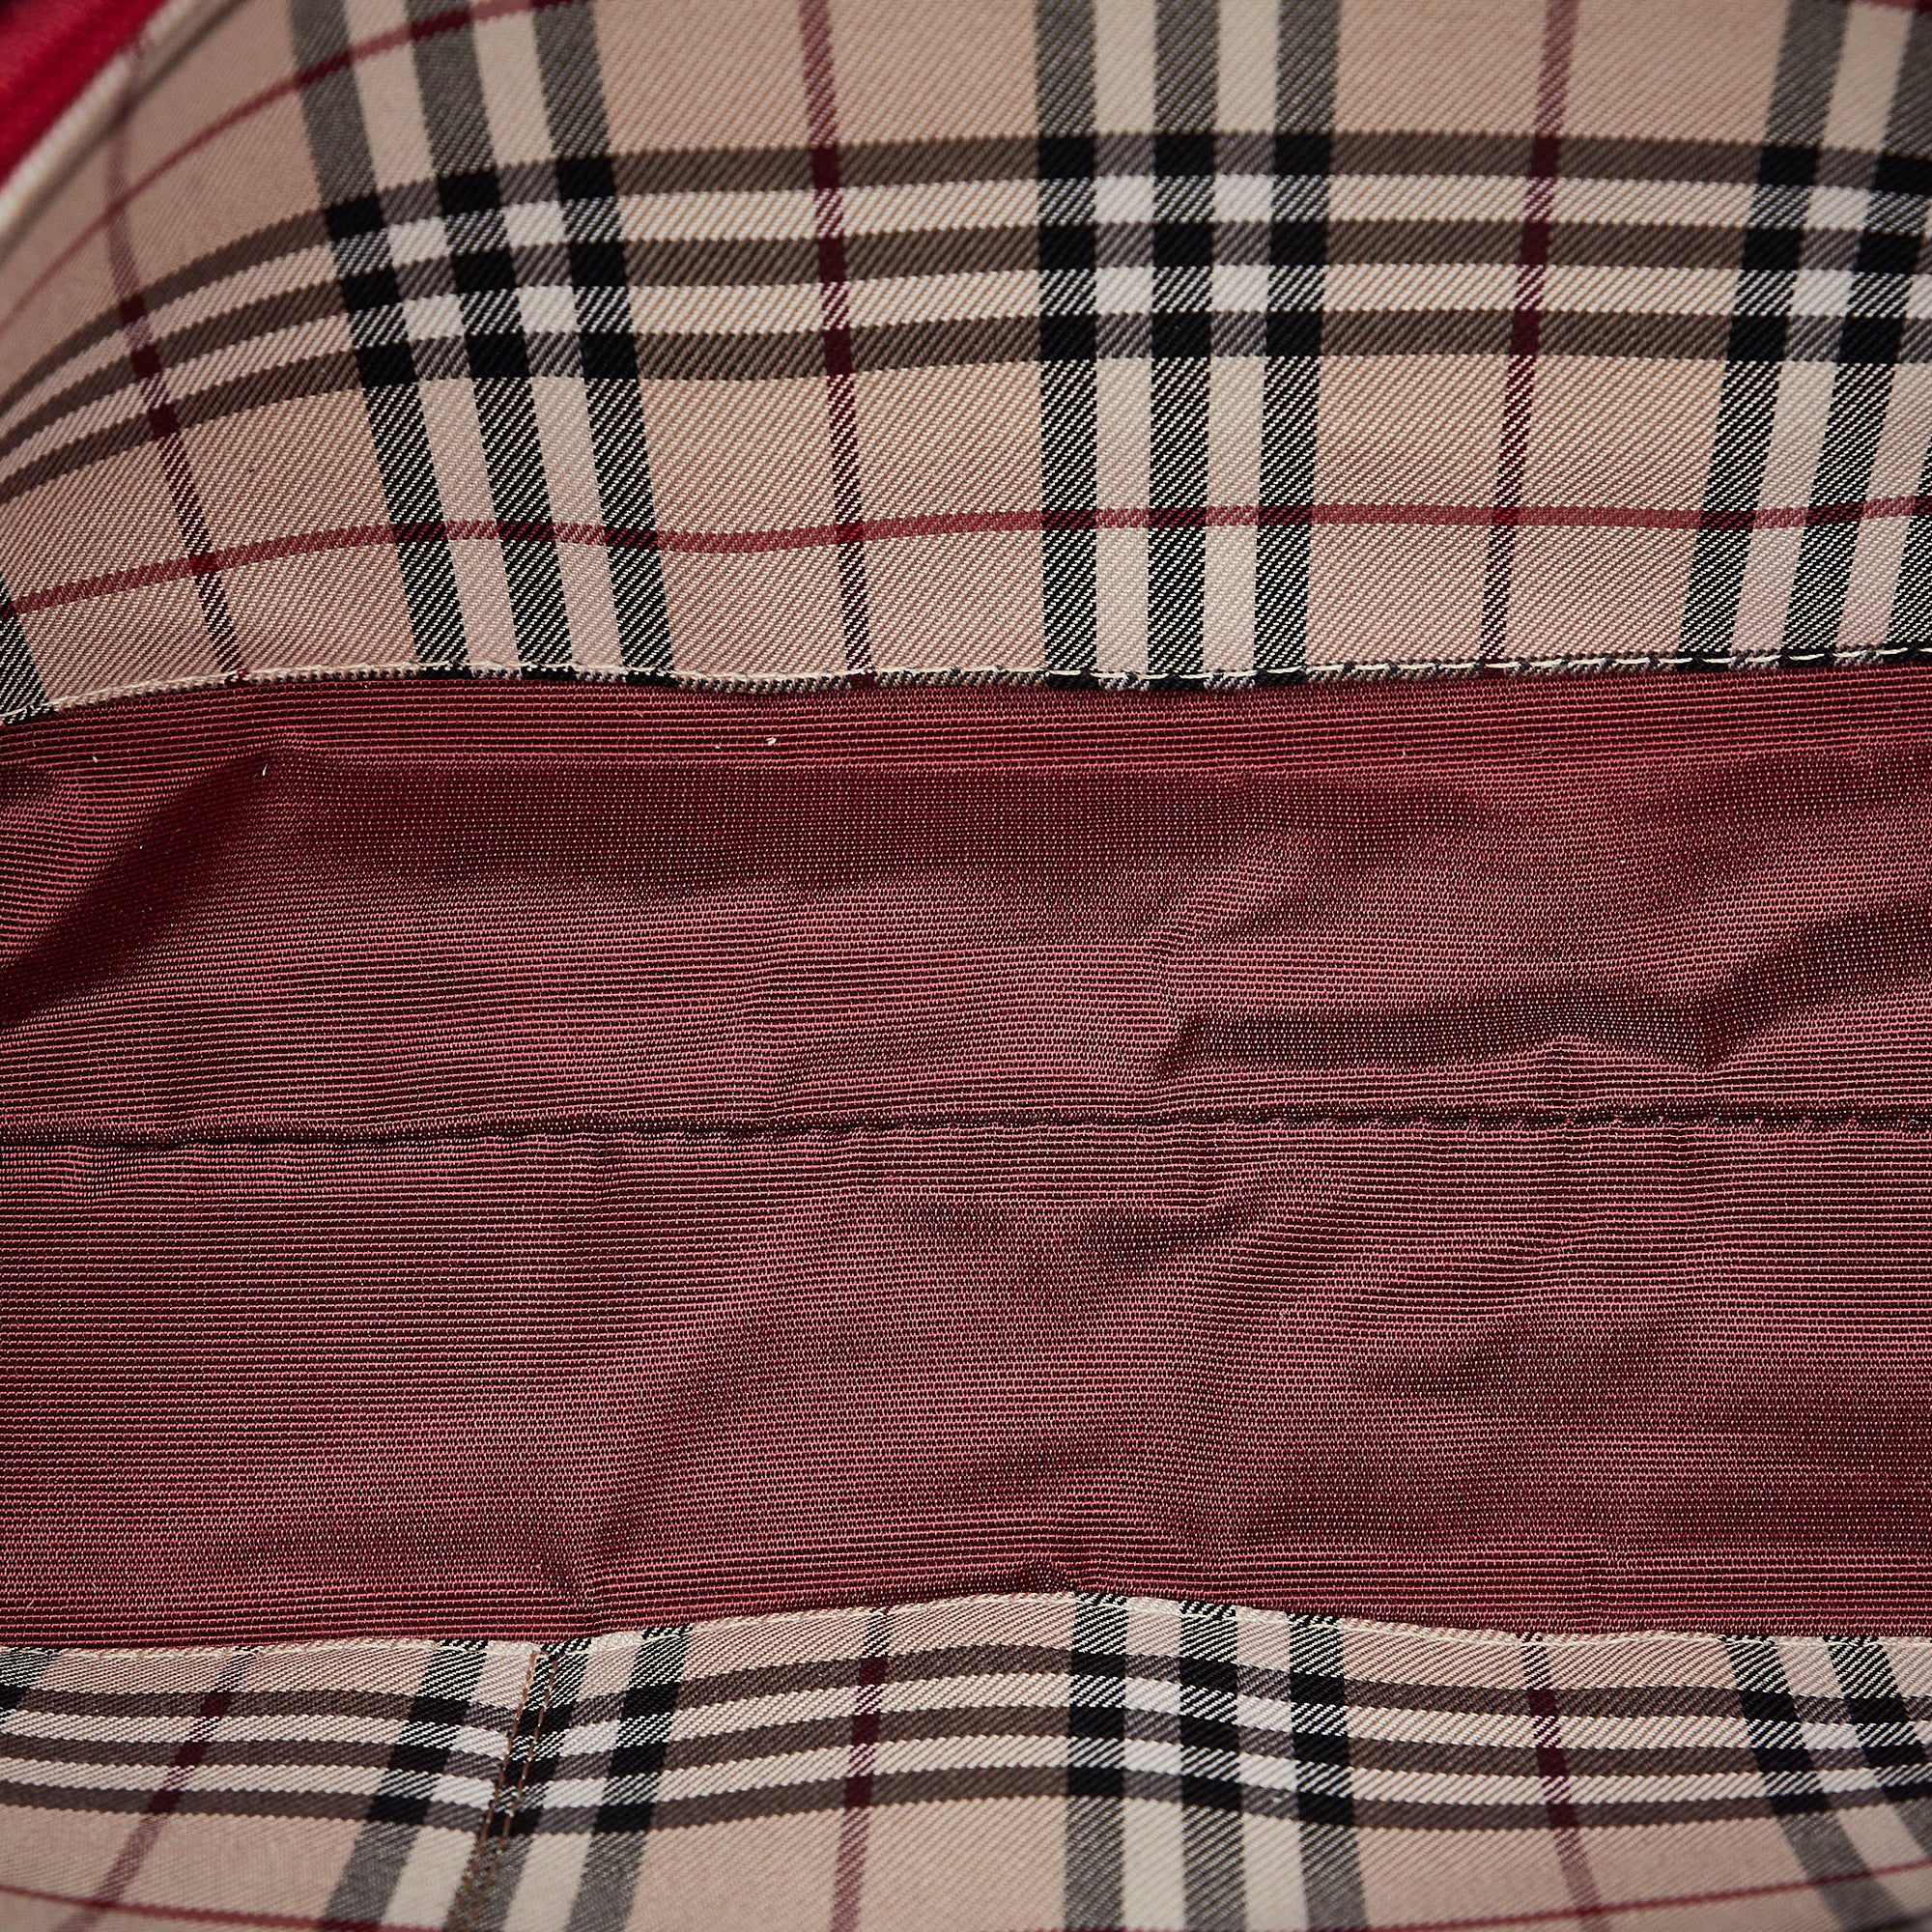 Brown Burberry Medium Leather Belt Bag Satchel – Designer Revival